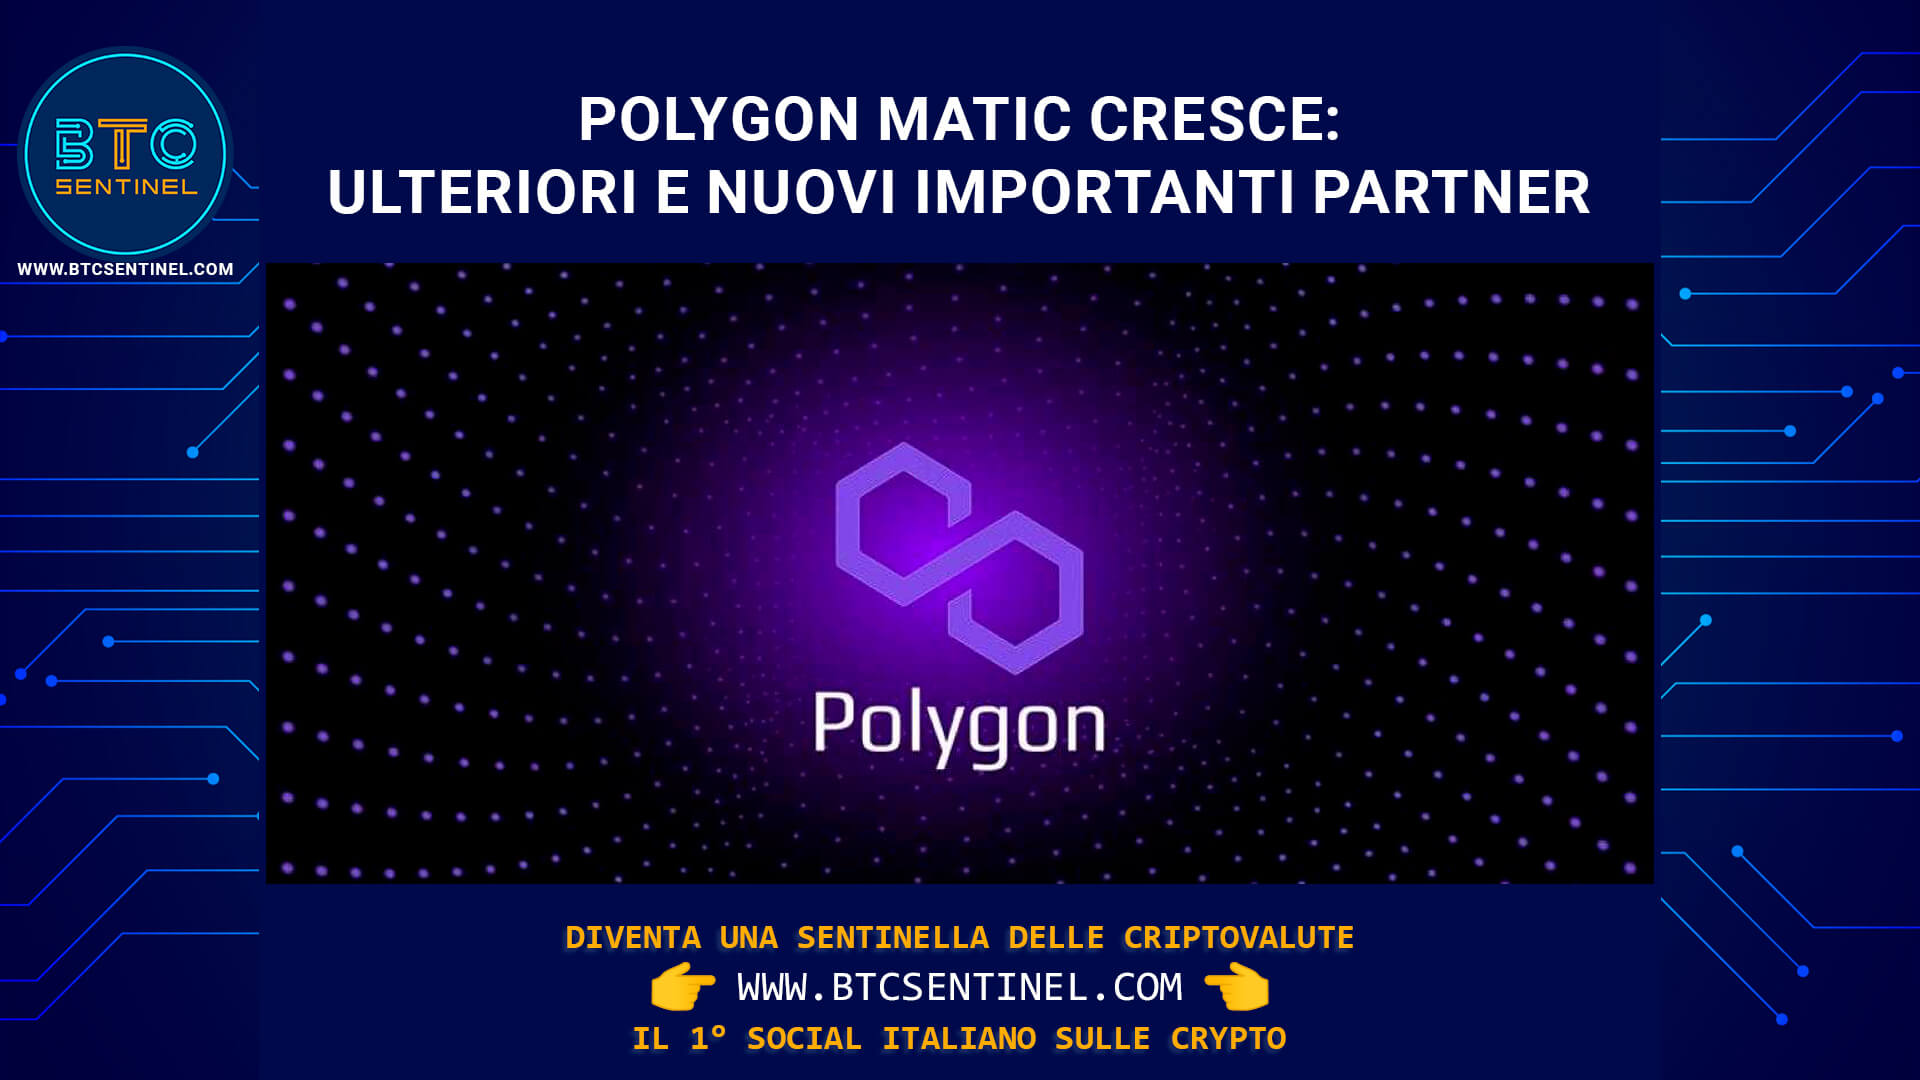 Il prezzo di Polygon MATIC cresce e si prevedono ulteriori rialzi grazie ai sempre maggiori casi d’uso della sua blockchain